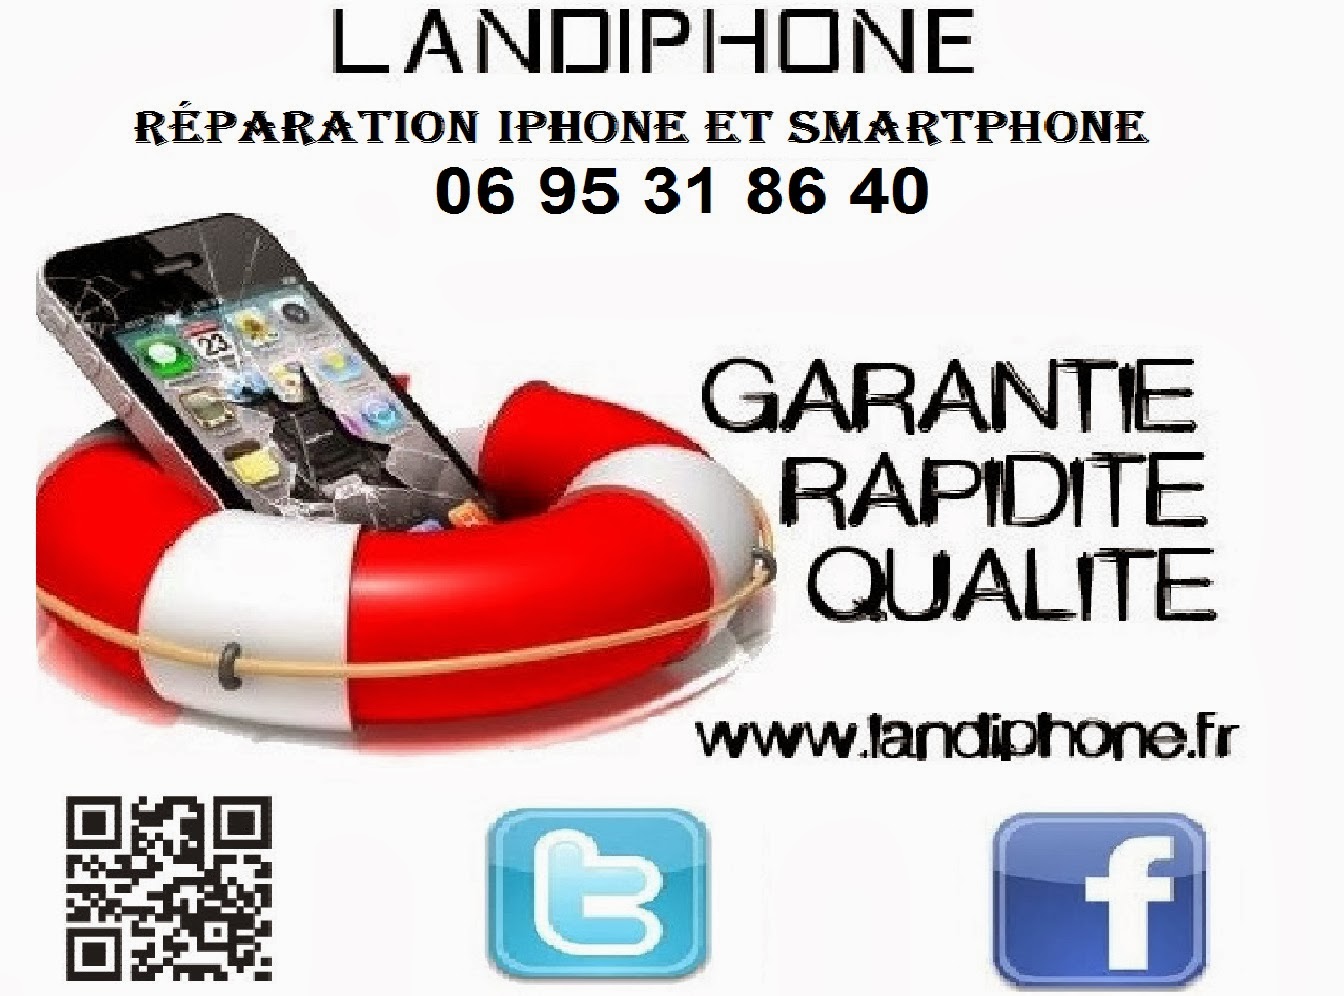 photo de la boutique de Landiphone réparation iphone smartphone landes